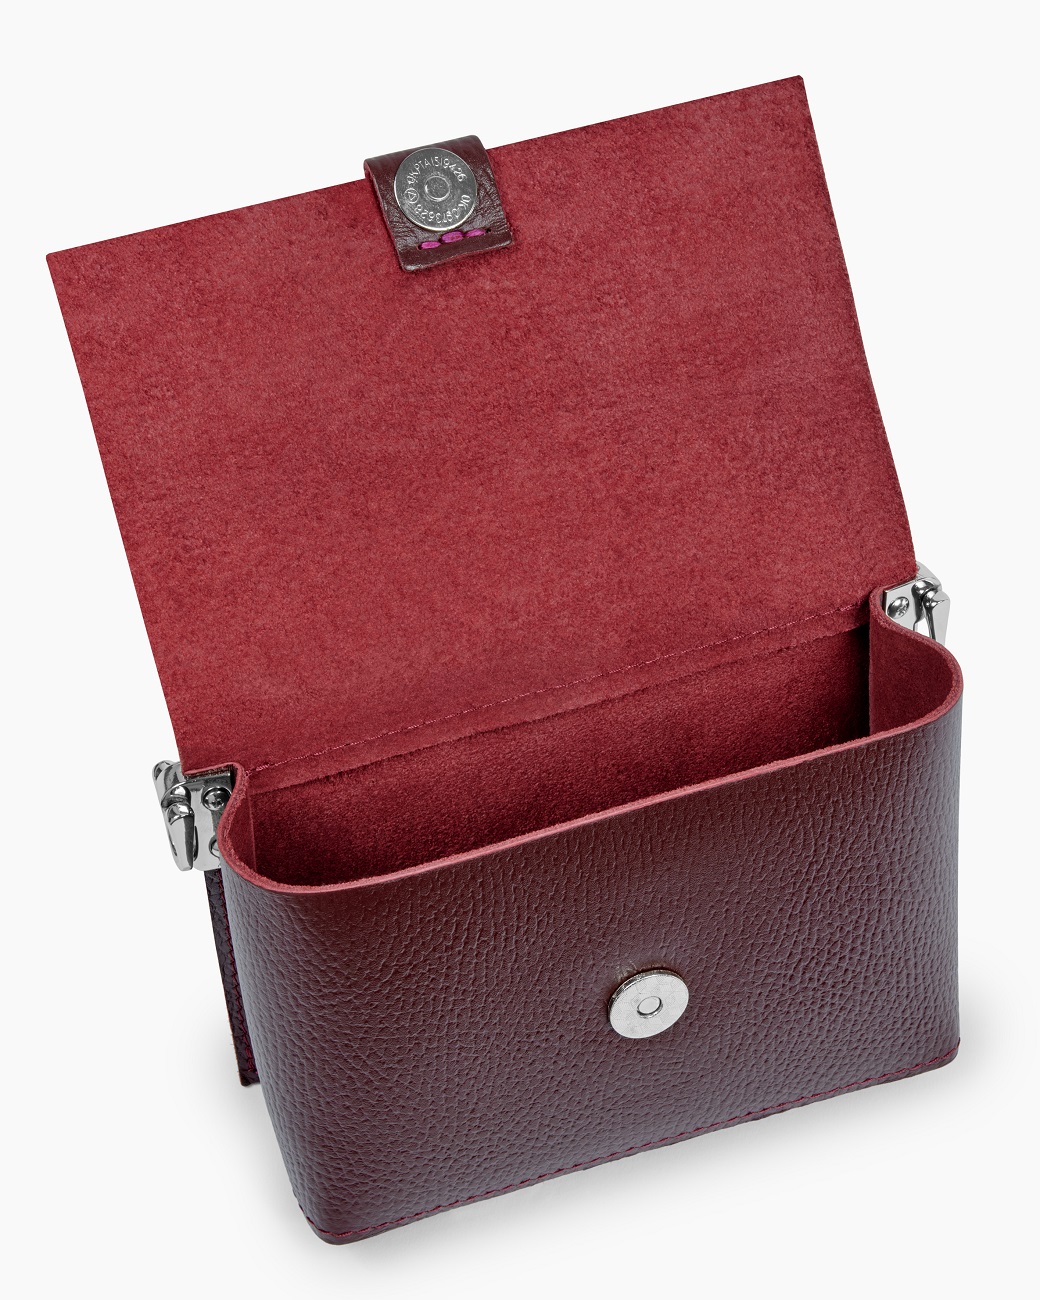 Женская поясная сумка из натуральной кожи бордовая A004 burgundy grain